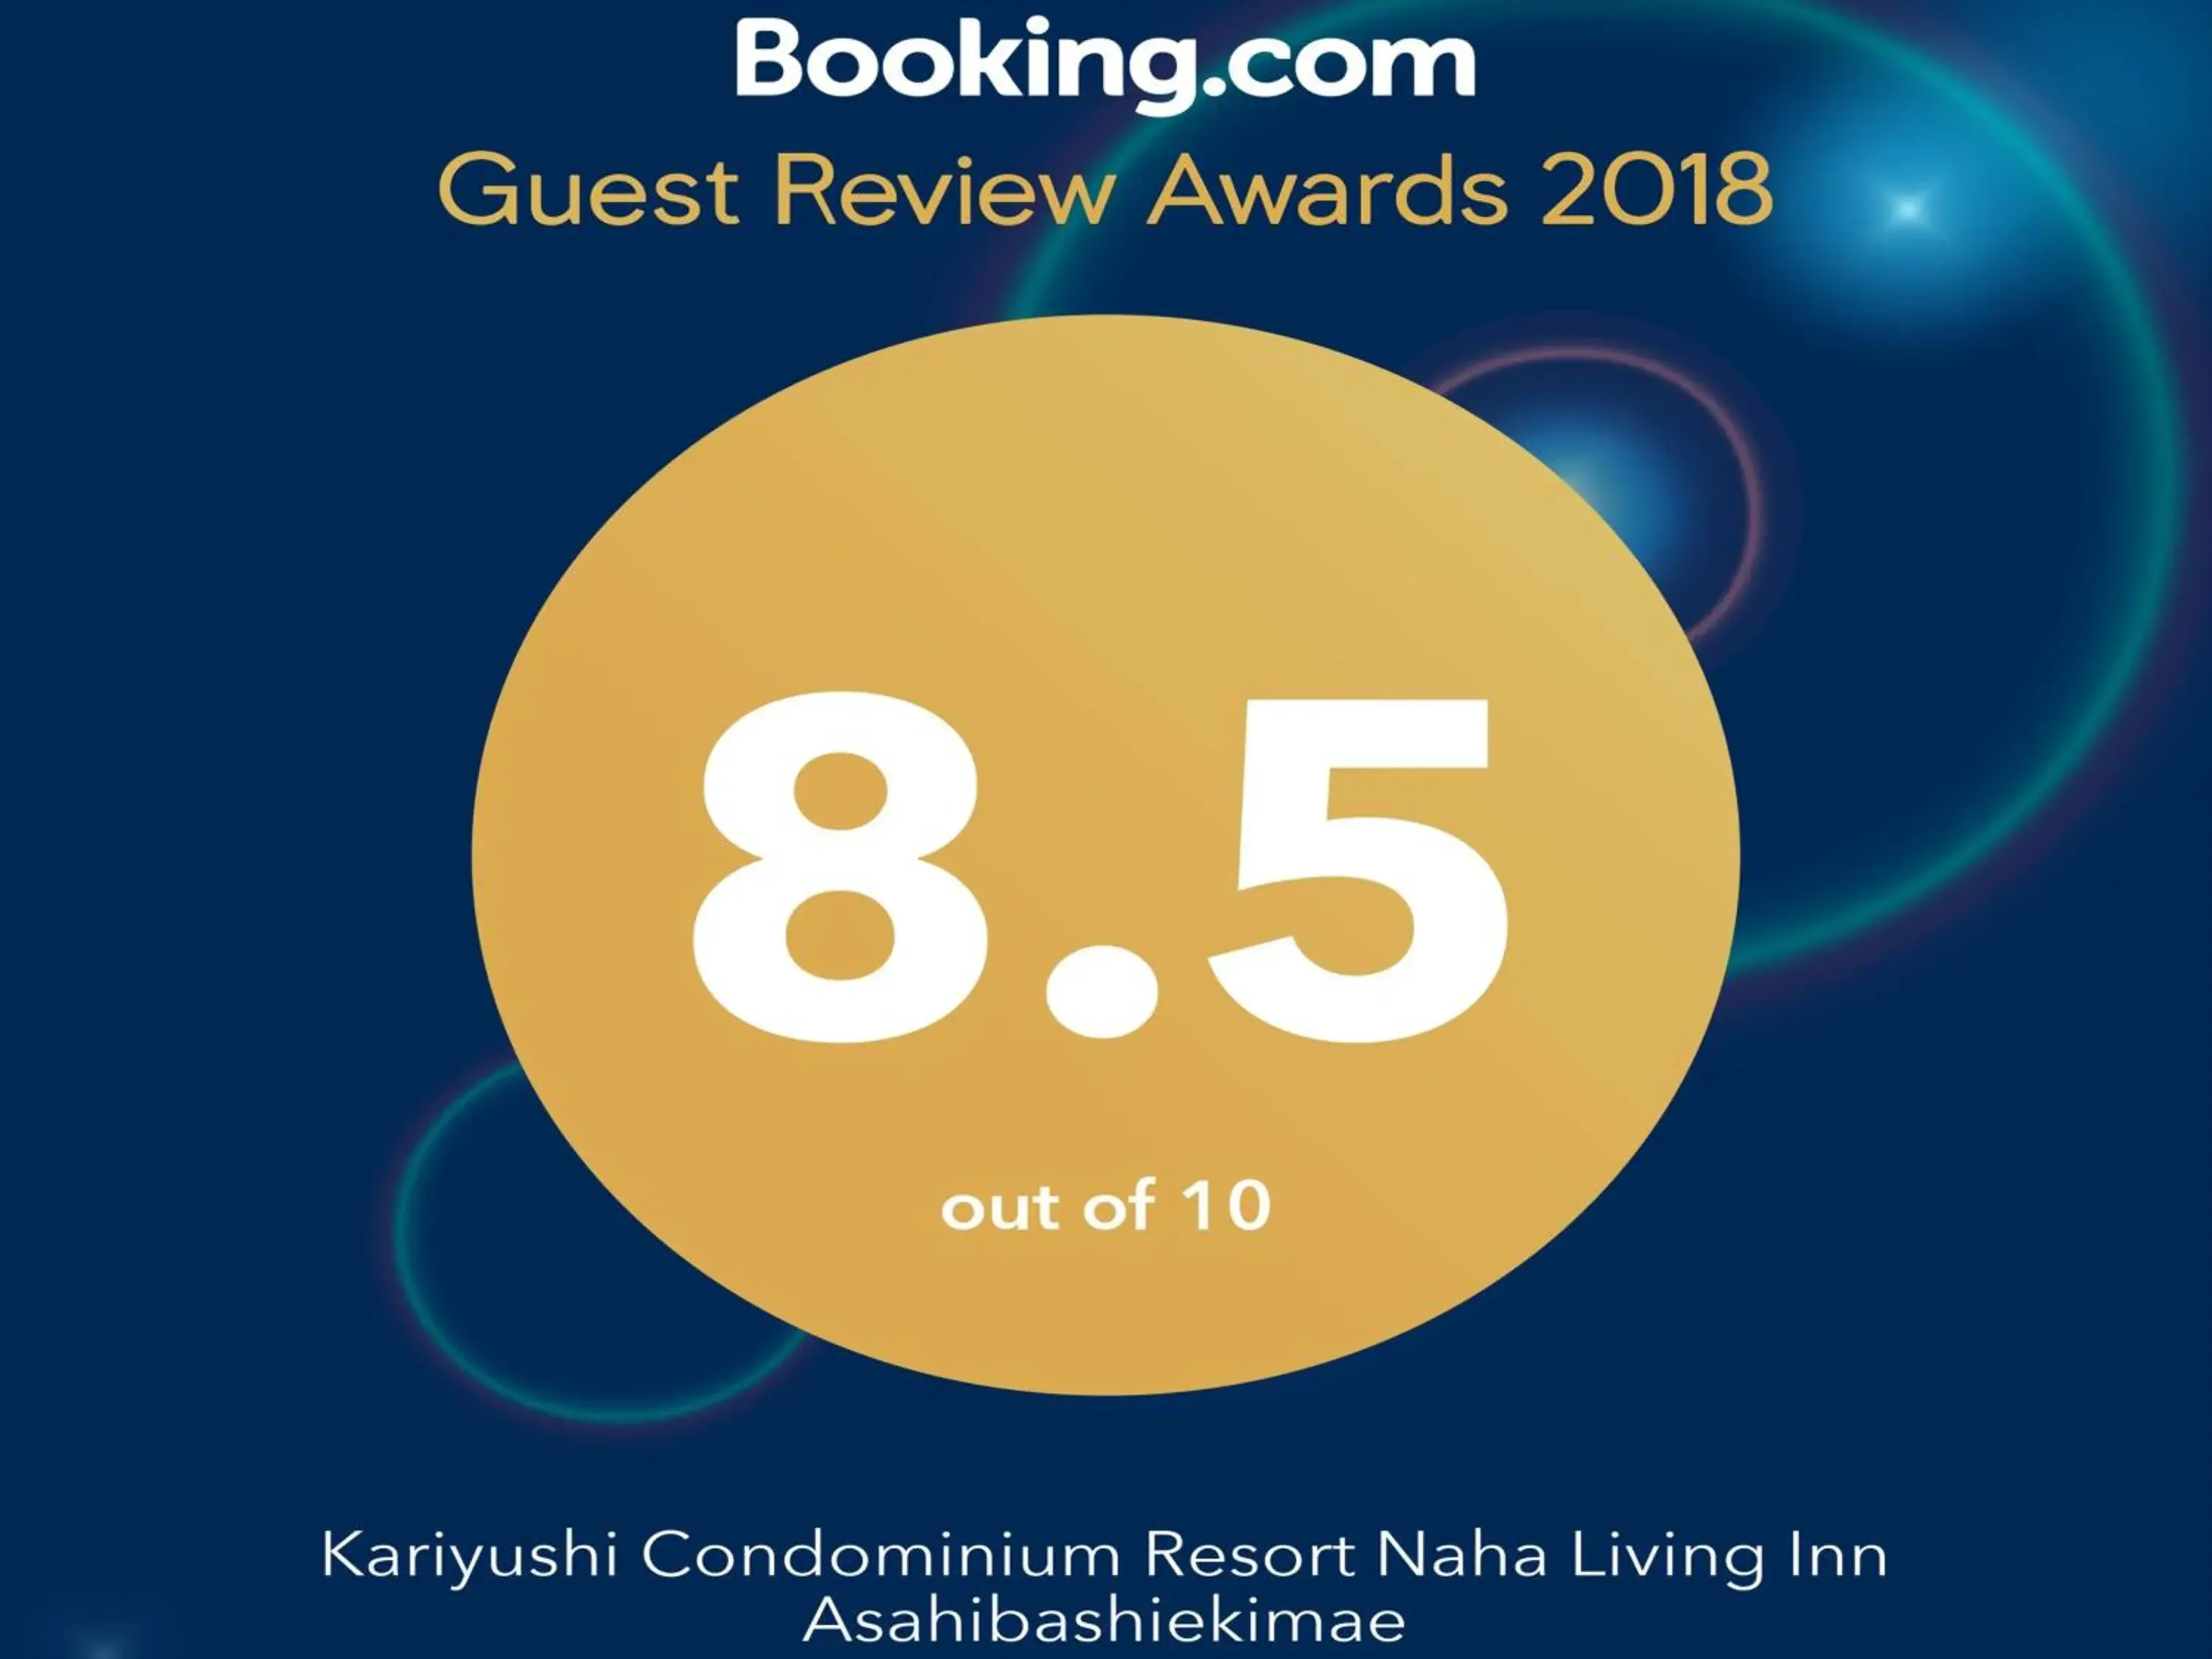 Certificate/Award in Kariyushi COndominium Resort Naha Living Inn Asahibashiekimae Annex and Premier